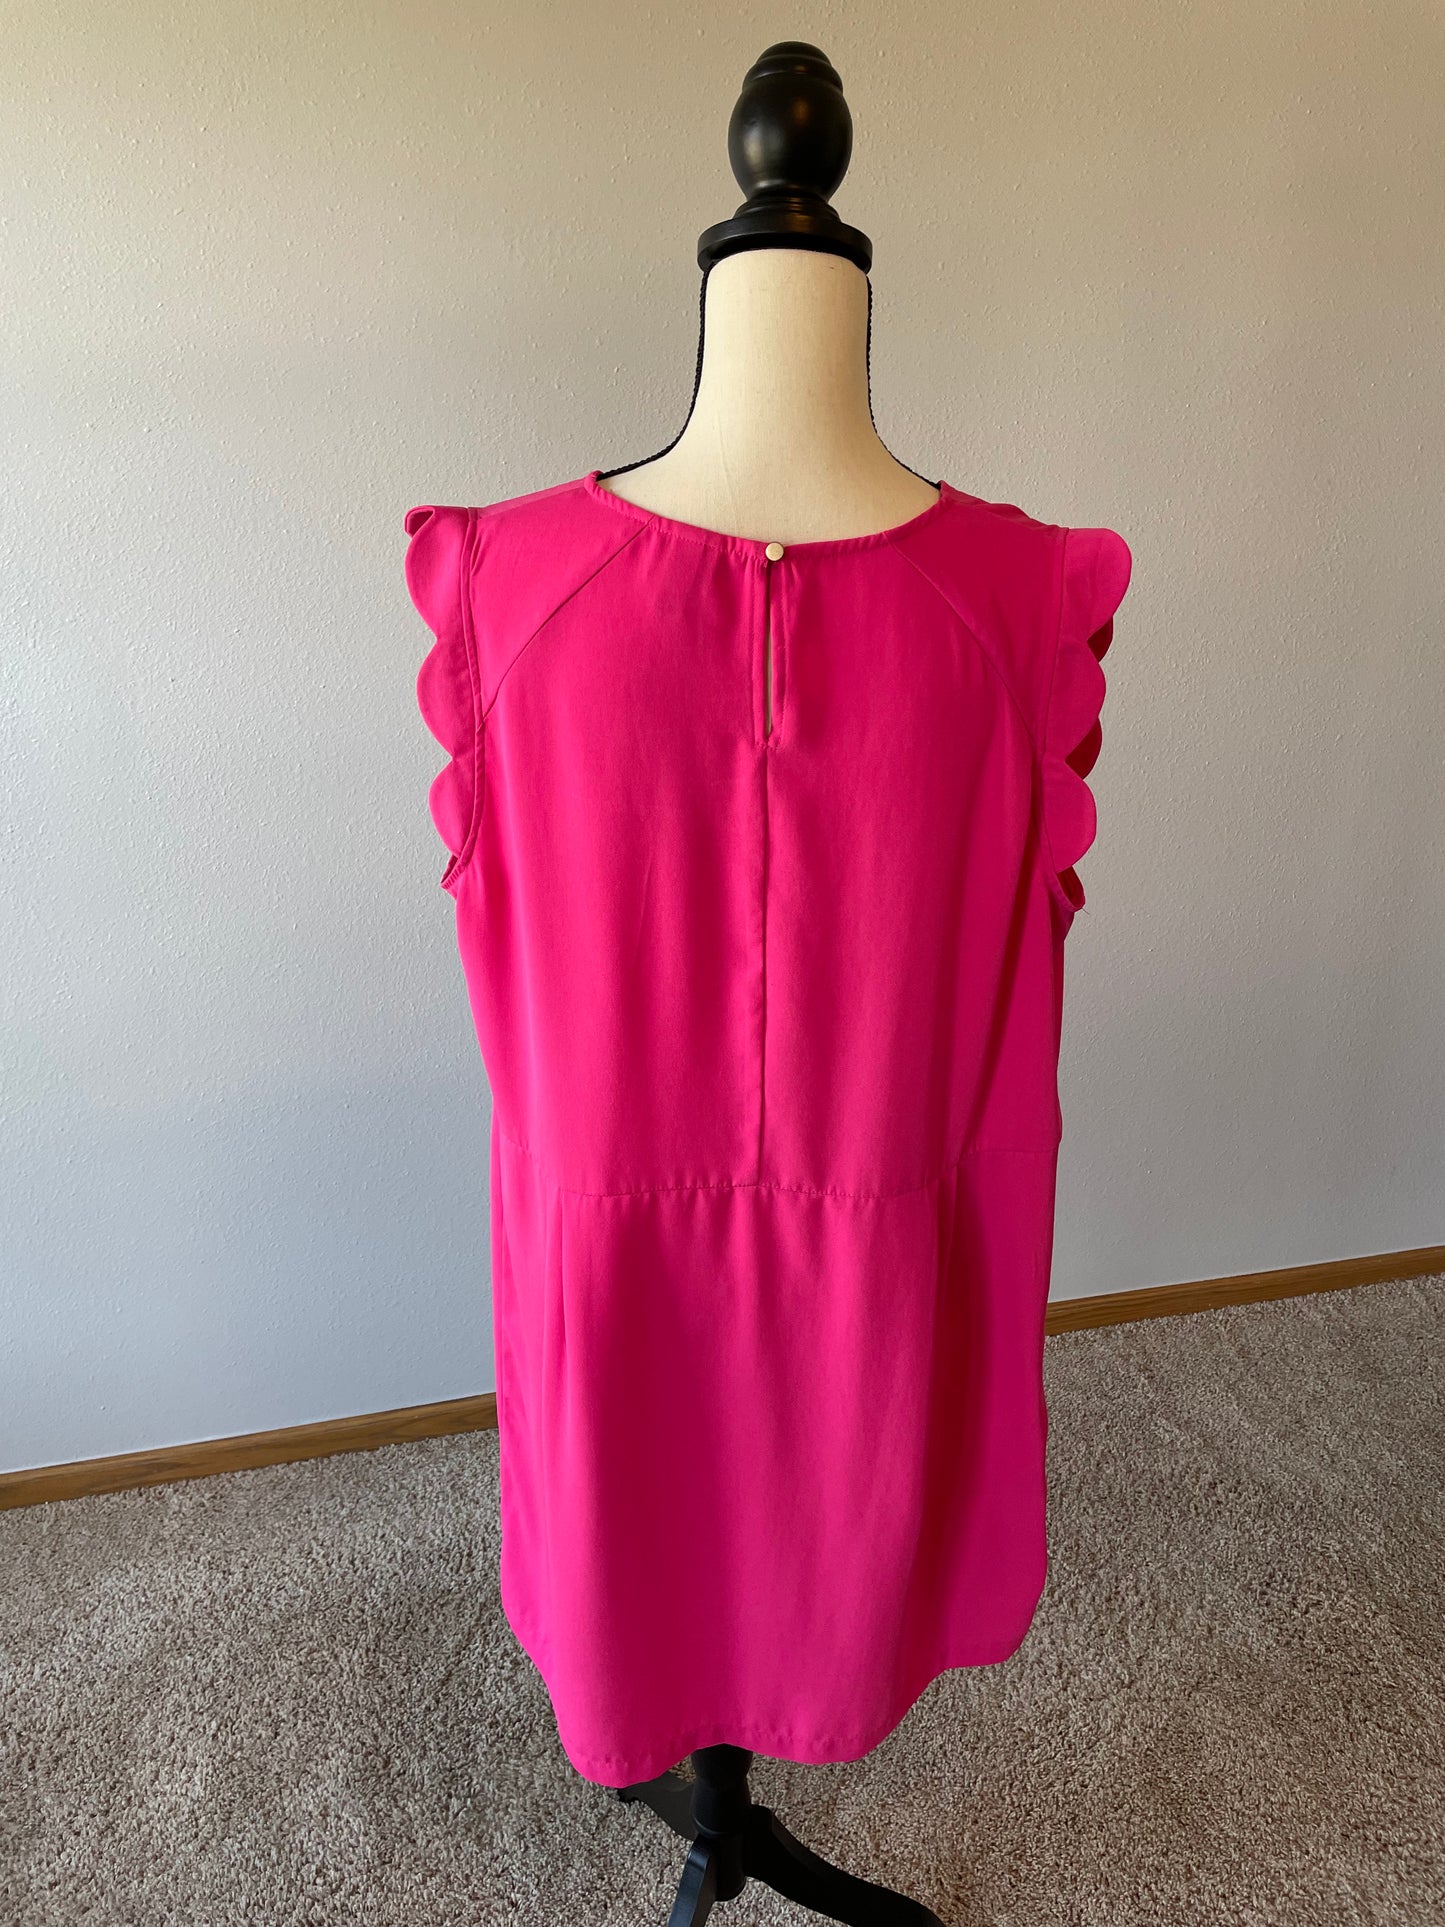 Bright Pink Cocktail Dress (XXL)